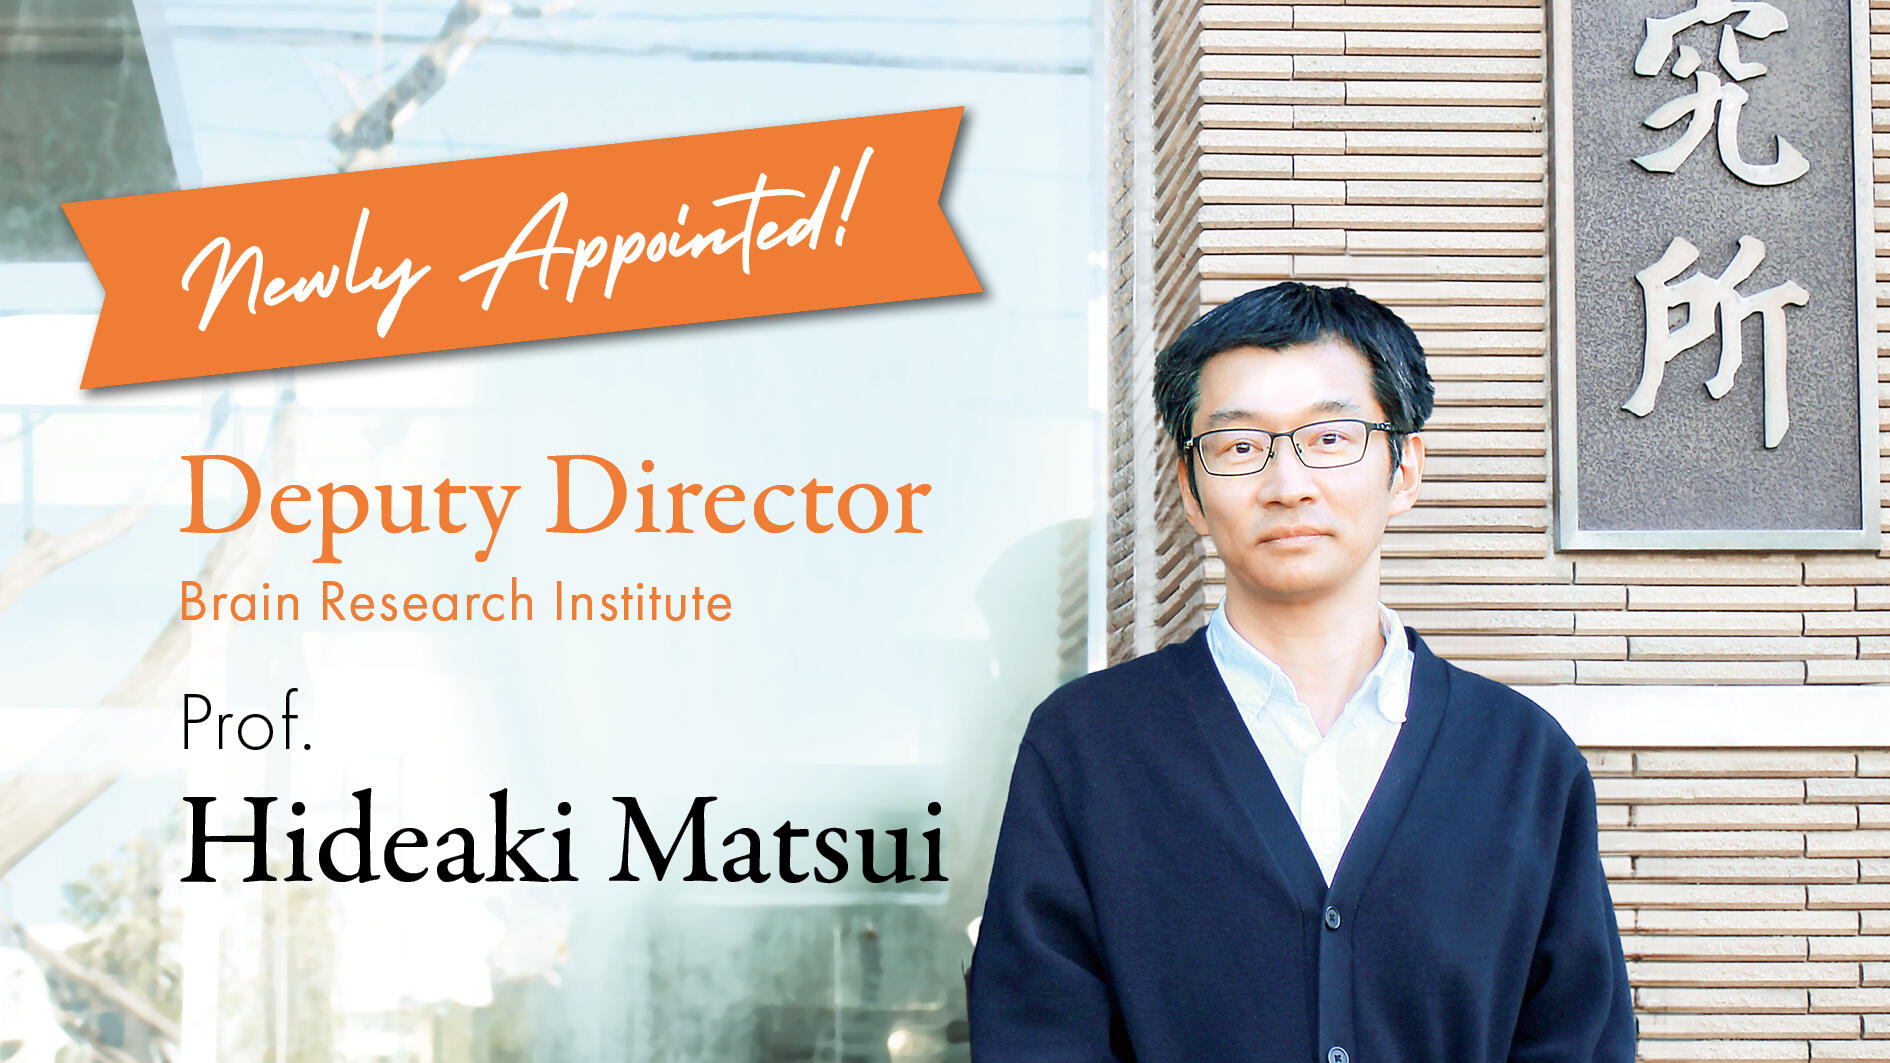 BRI appoints Professor Matsui as Deputy Director